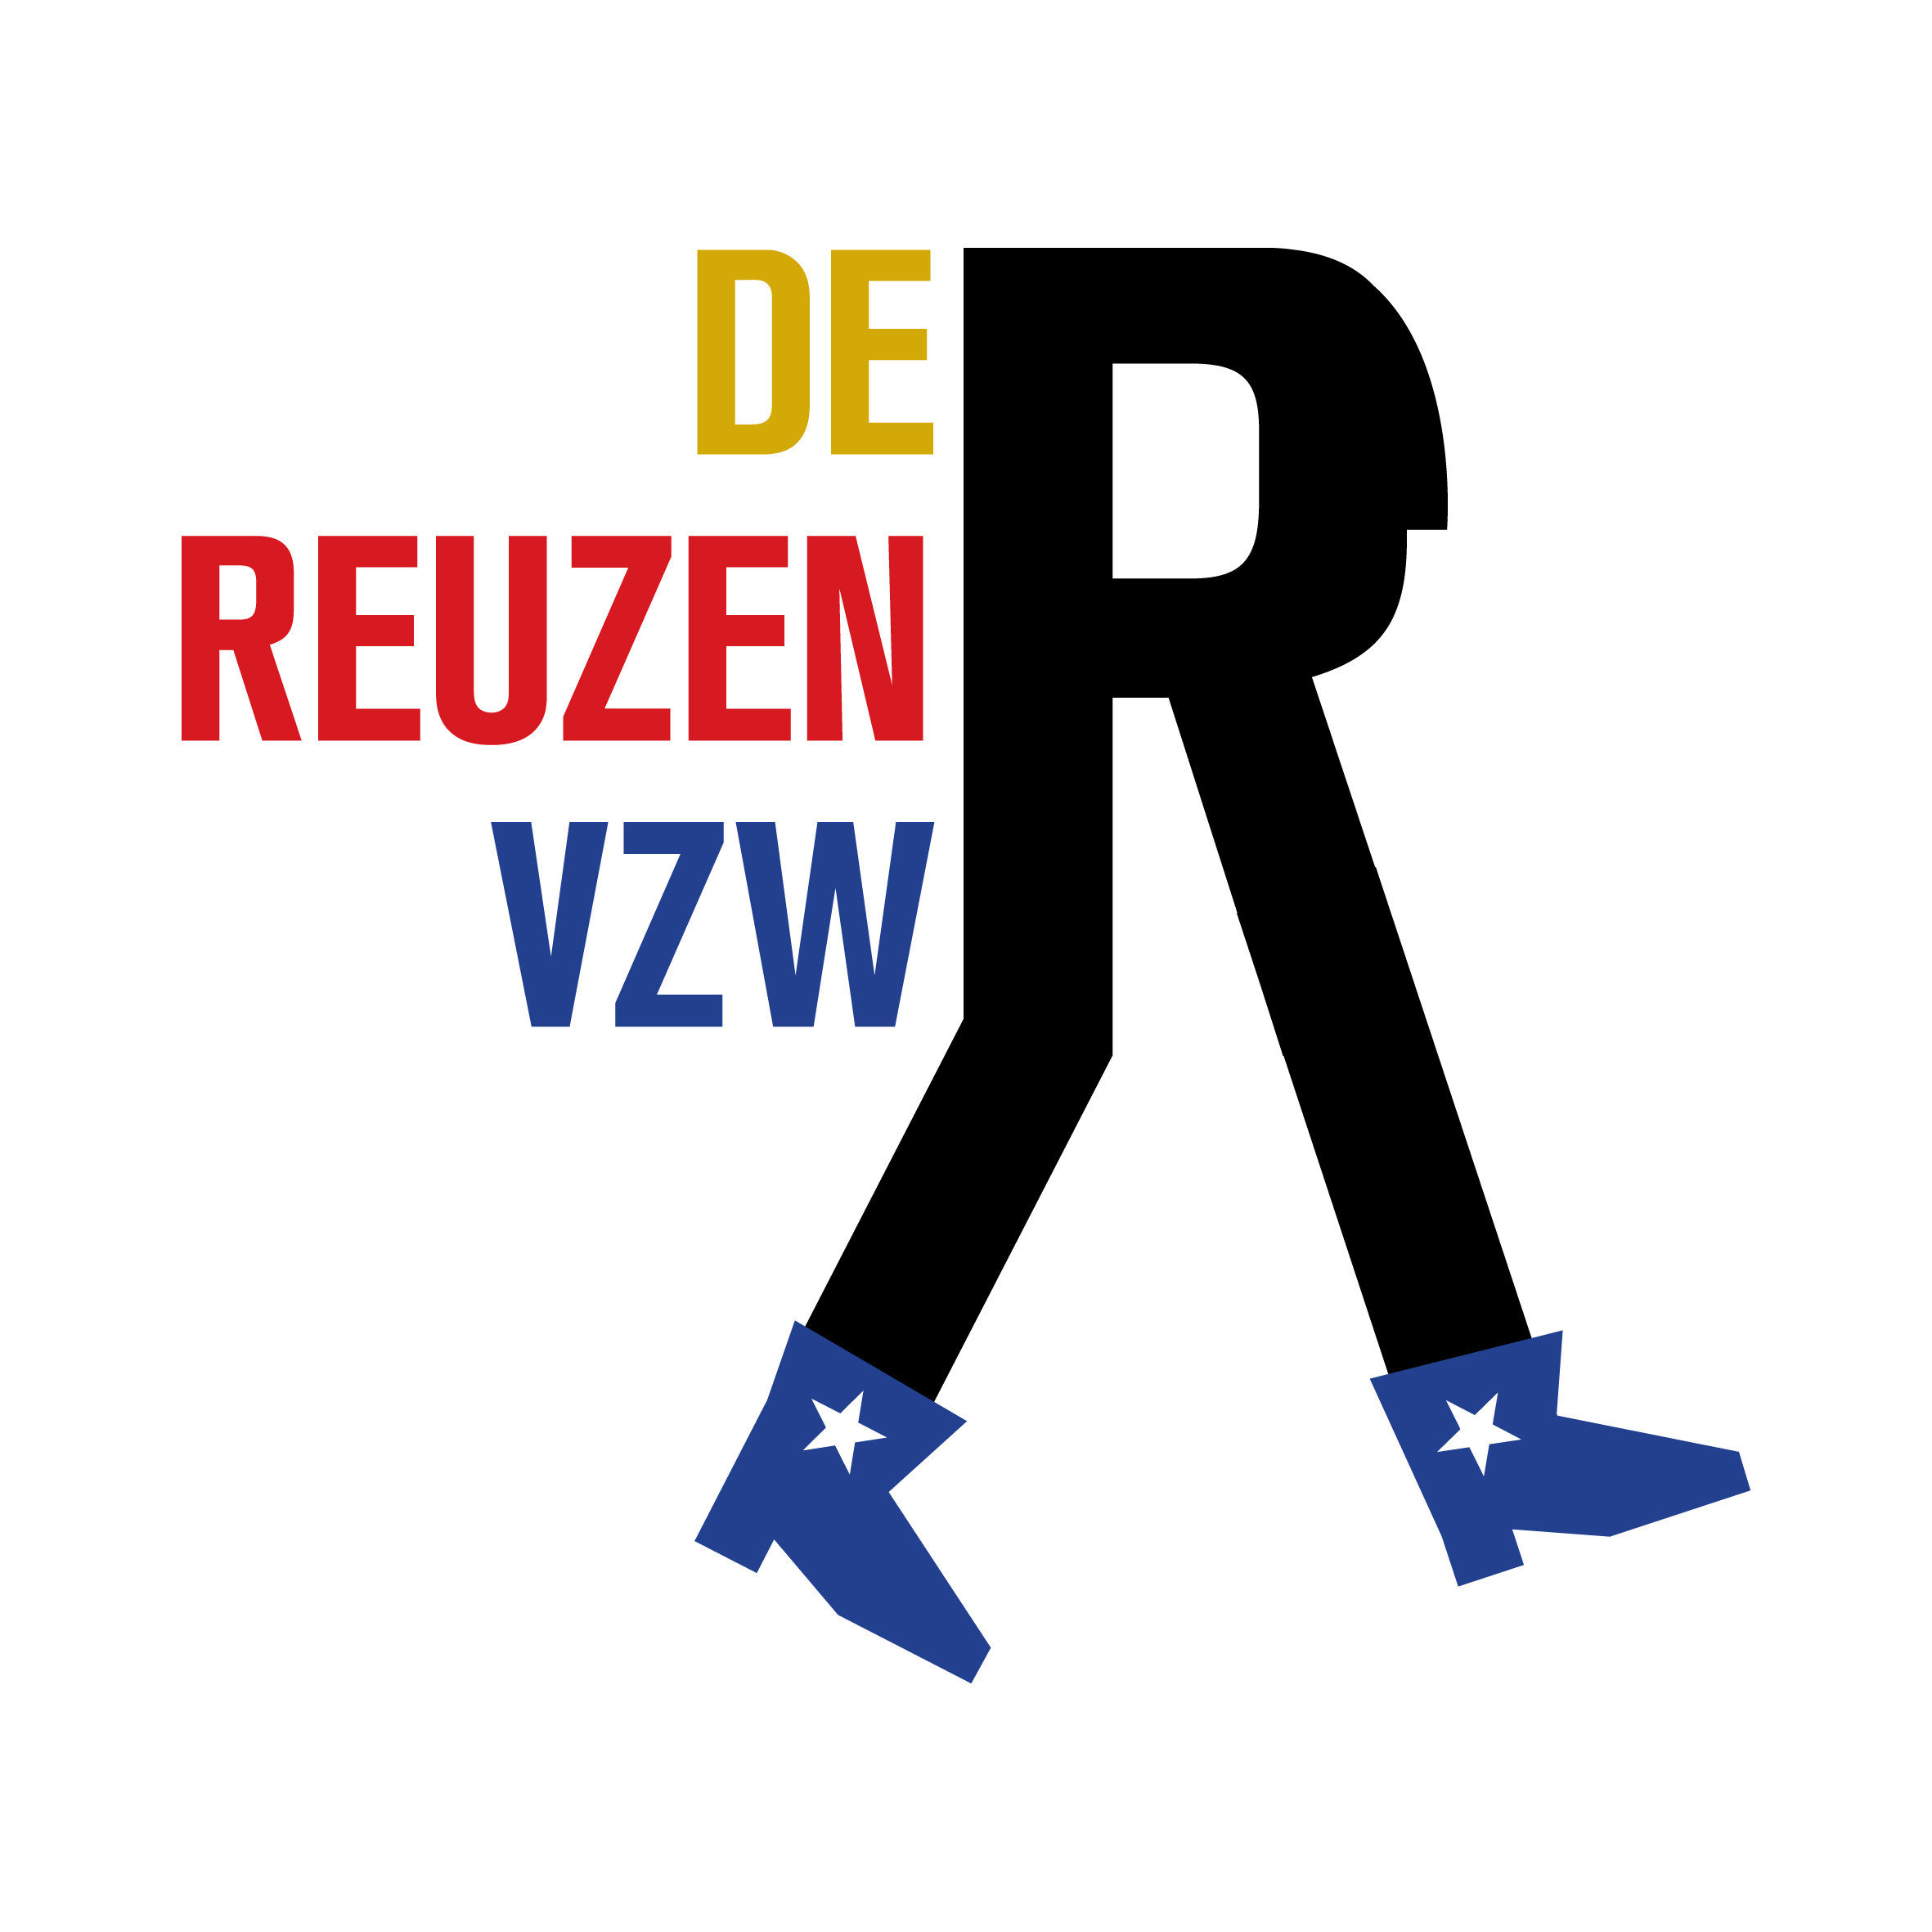 De Reuzen vzw logo